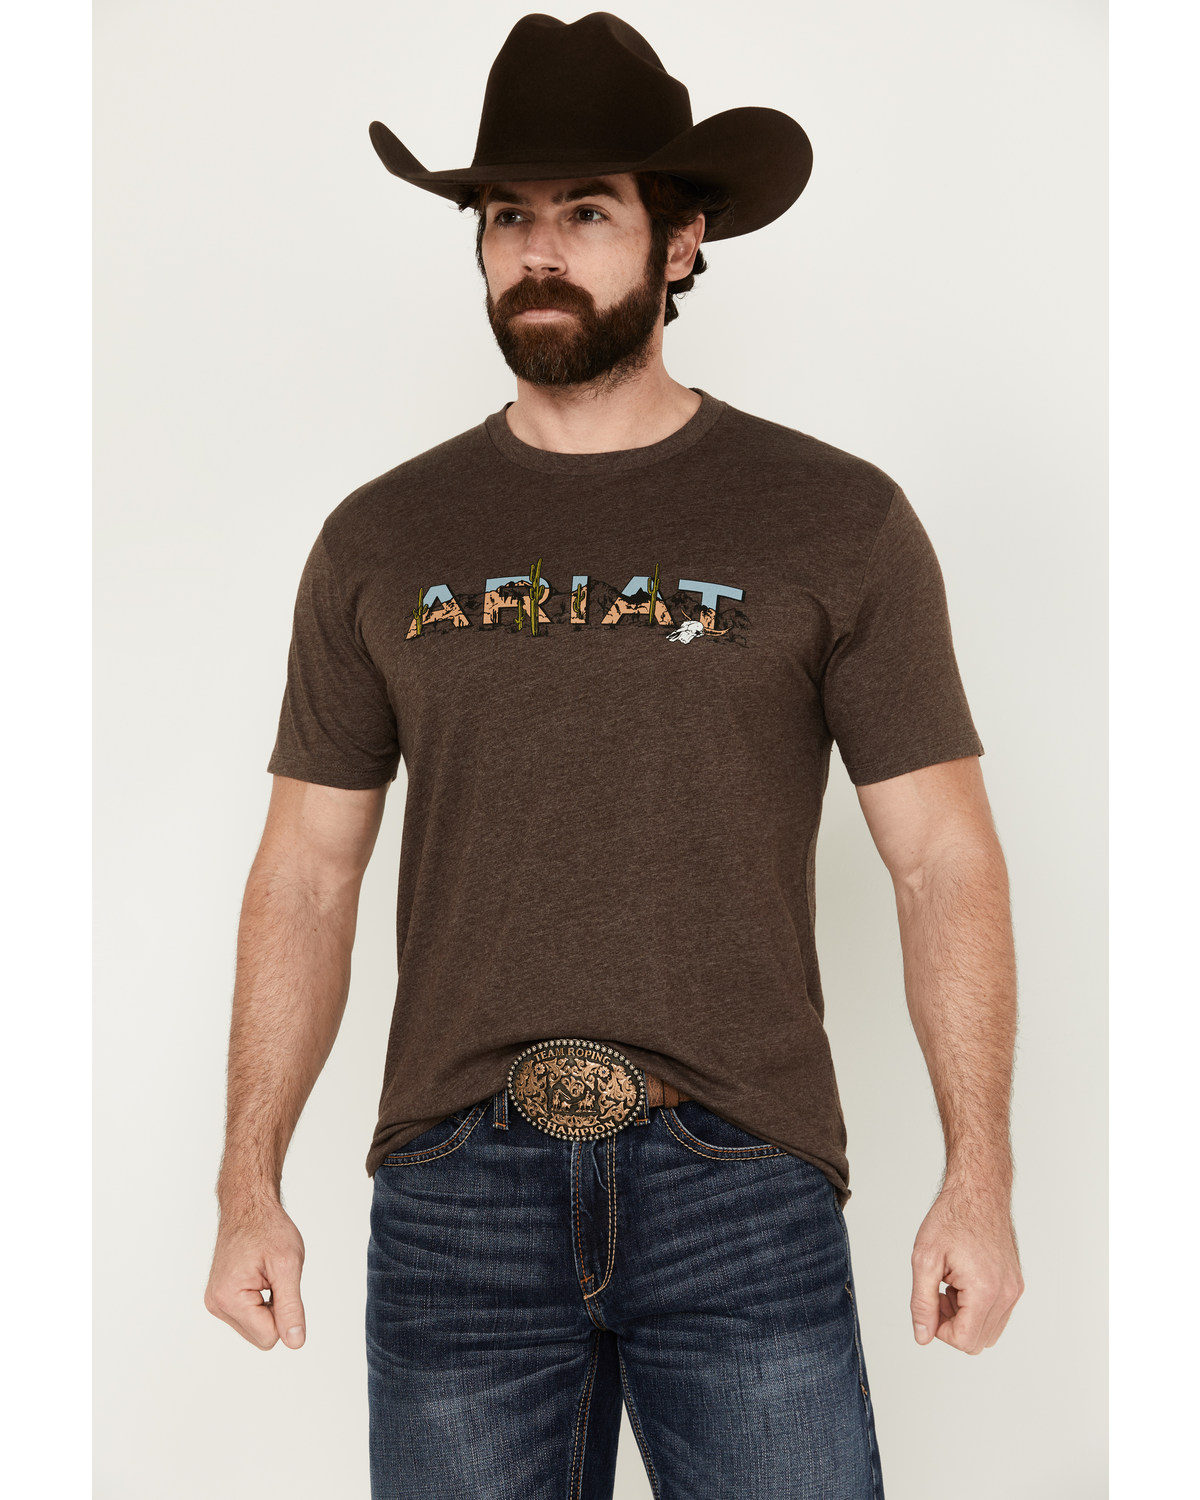 Ariat Men's Southwest Landscape Logo Short Sleeve Graphic T-Shirt